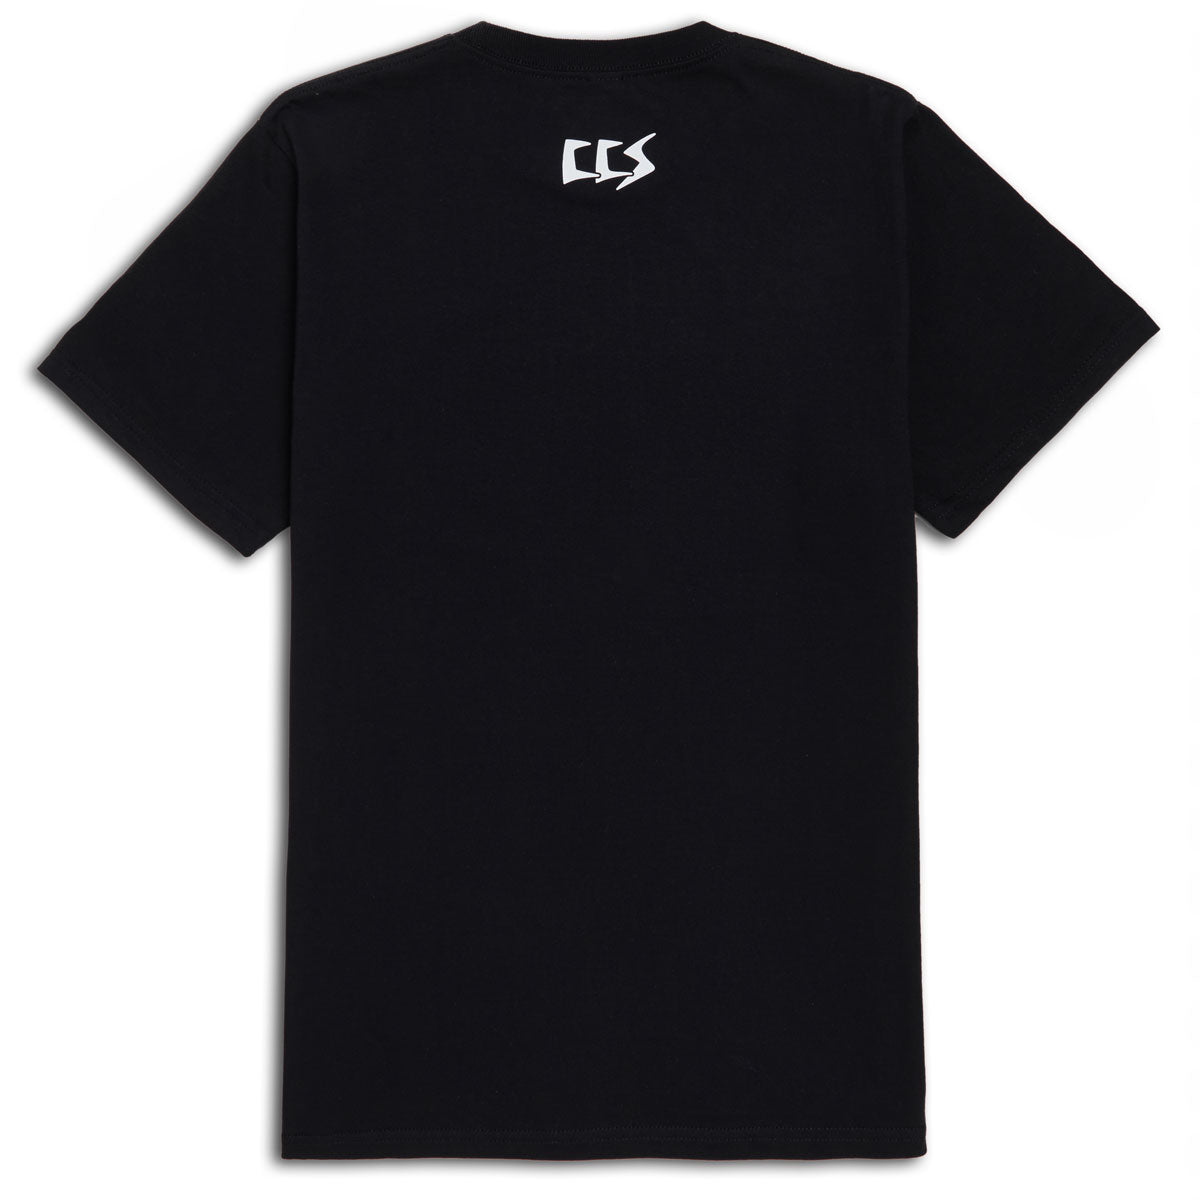 CCS OG Punk T-Shirt - Black/Pink image 2